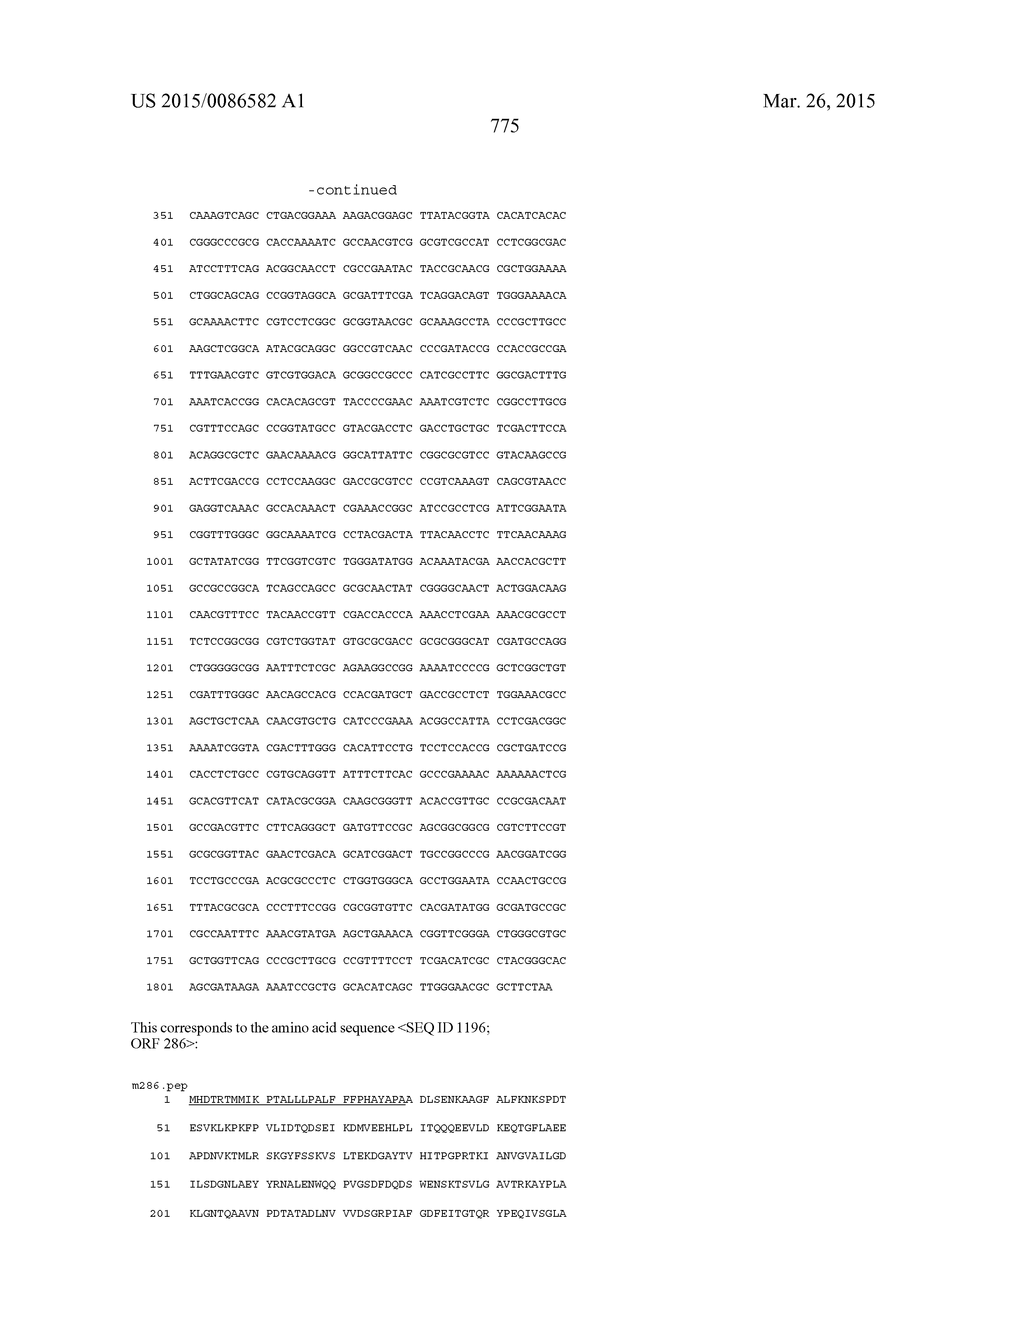 NEISSERIA MENINGITIDIS ANTIGENS AND COMPOSITIONS - diagram, schematic, and image 807